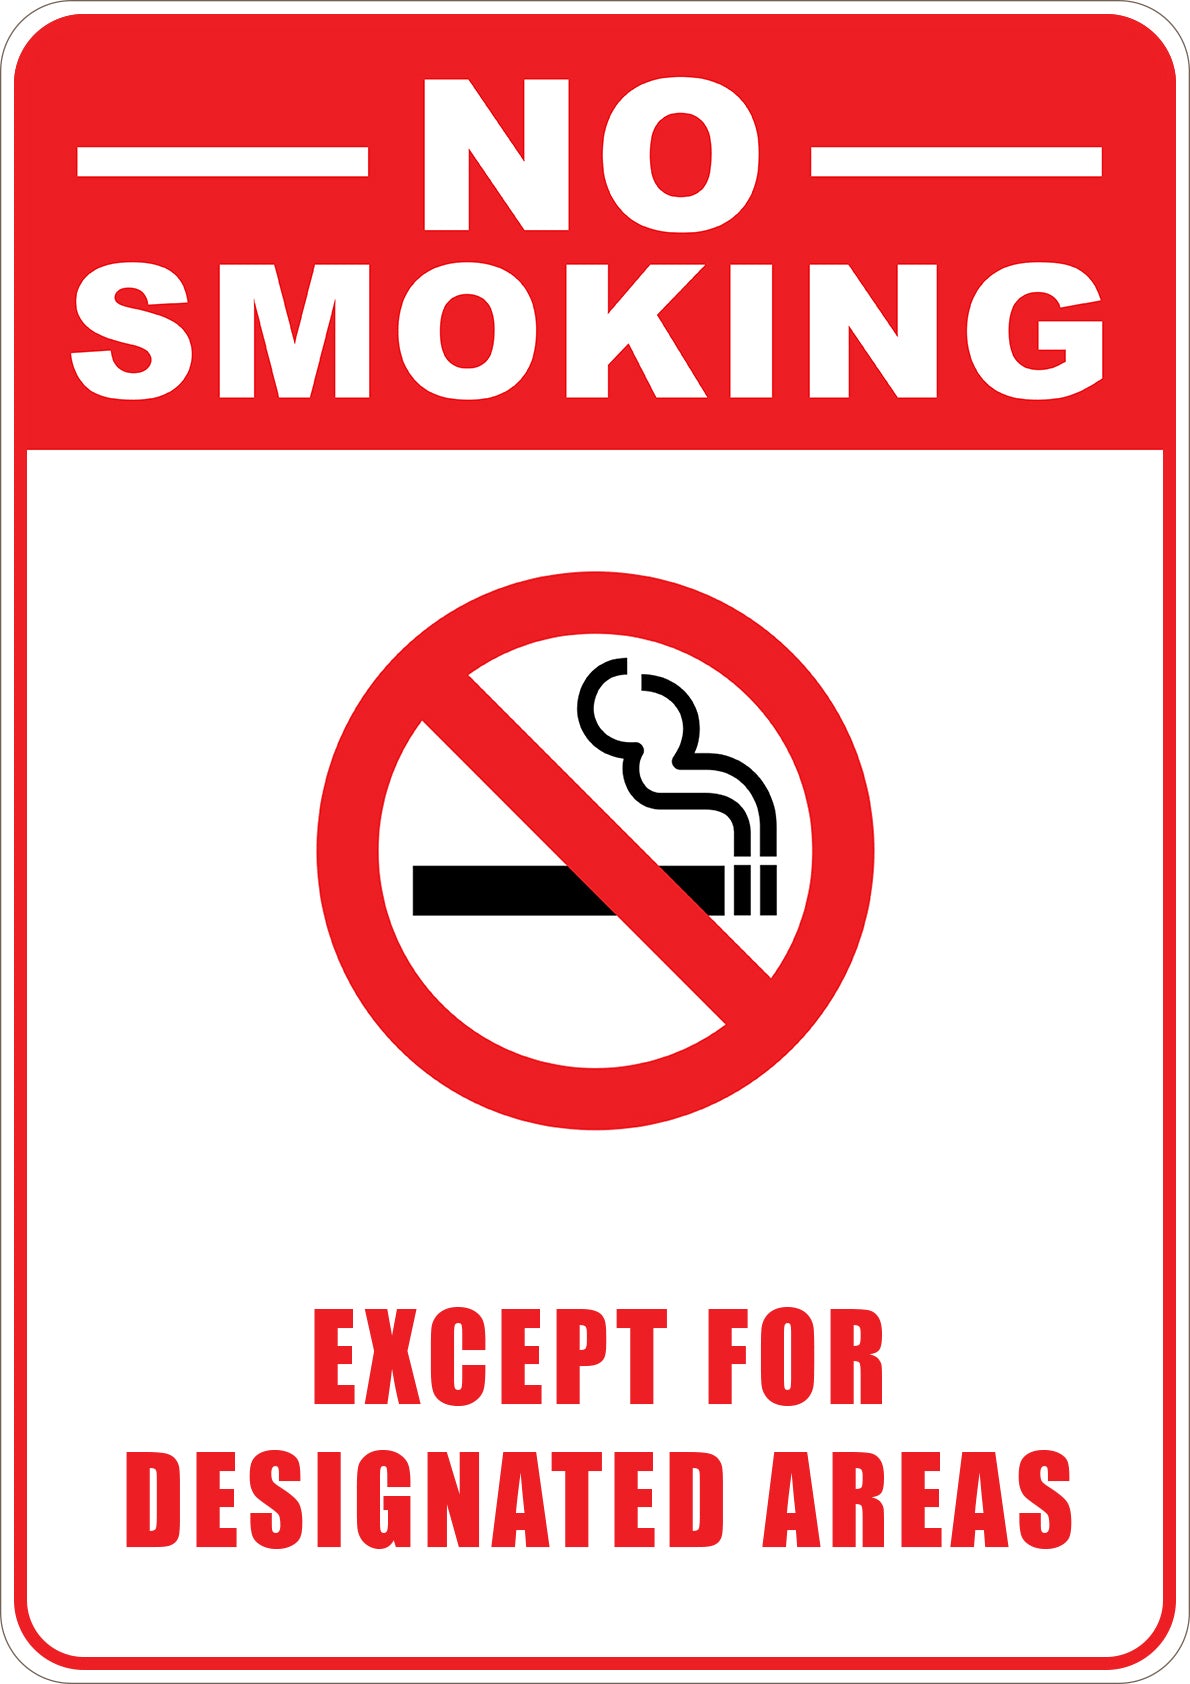 No Smoking Except for Designated Areas.